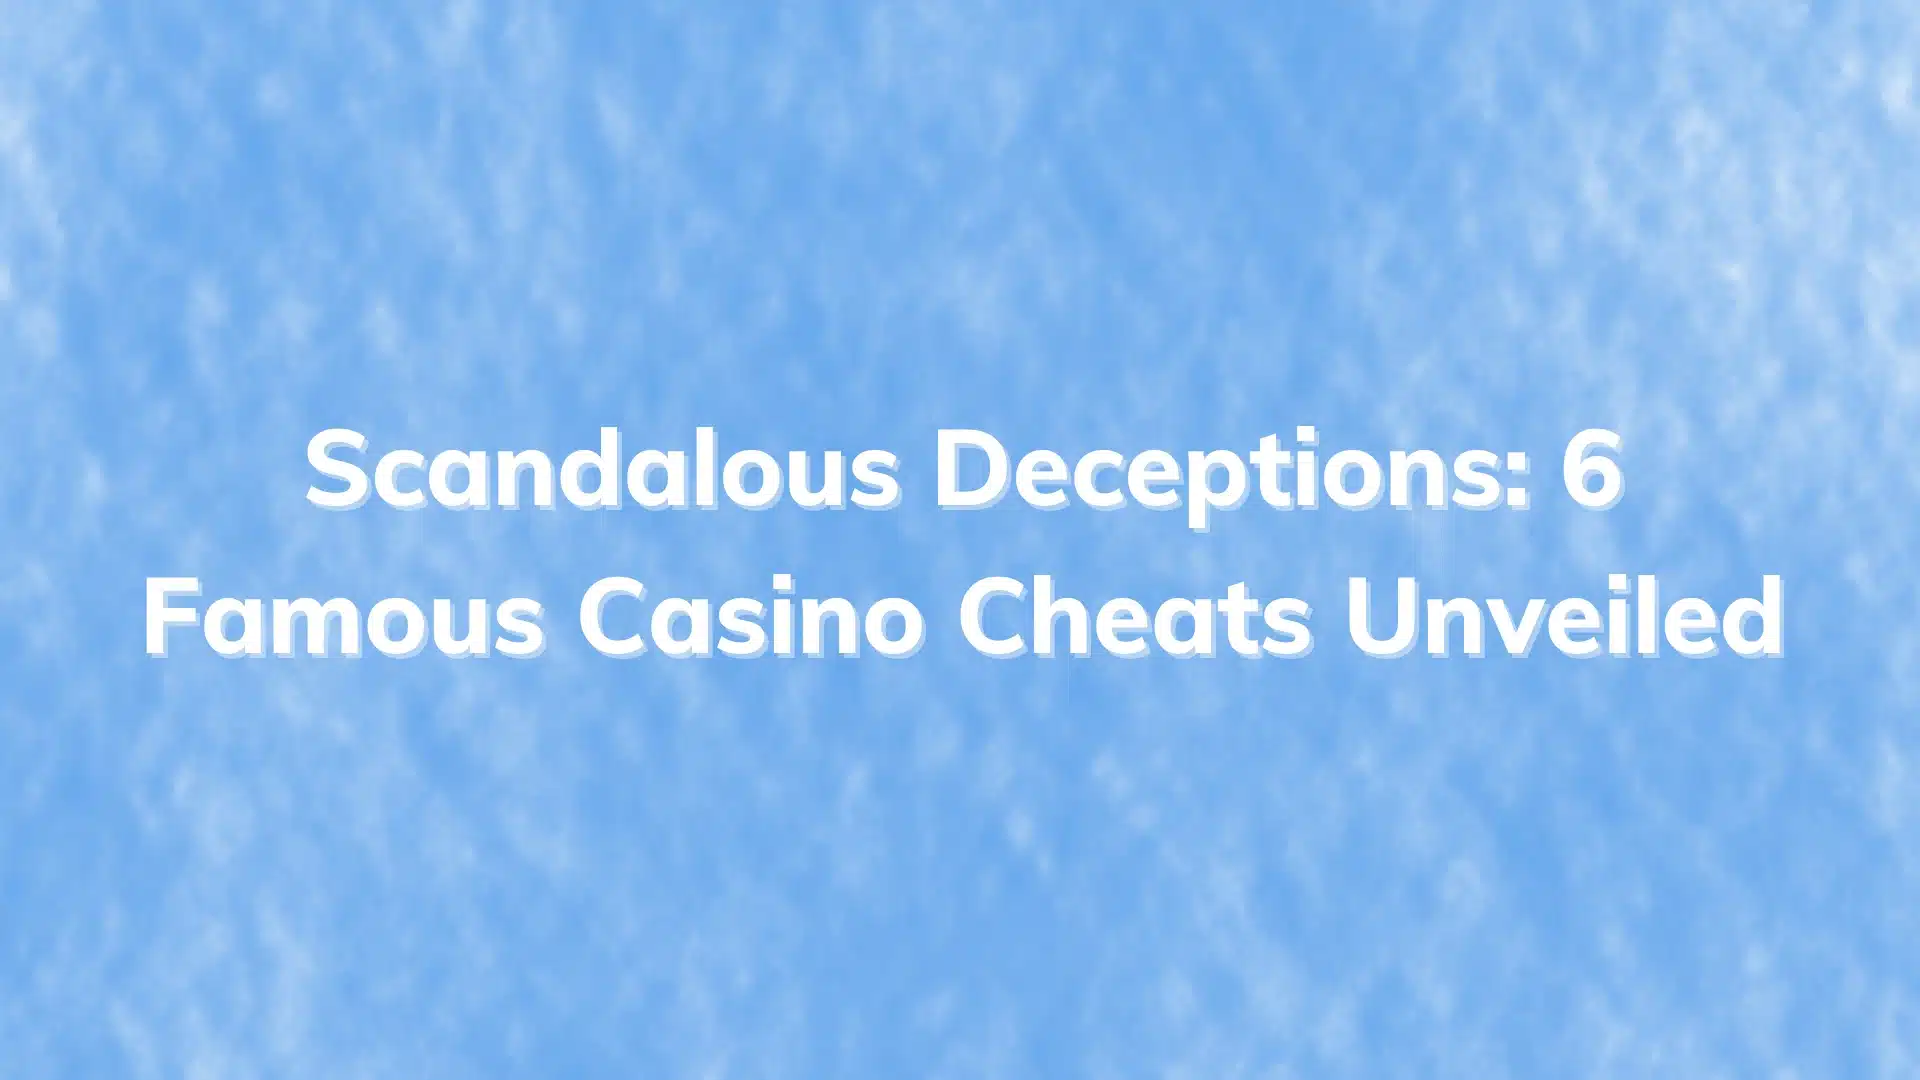 Featured Image Scandalous Deceptions 6 Famous Casino Cheats Unveiled